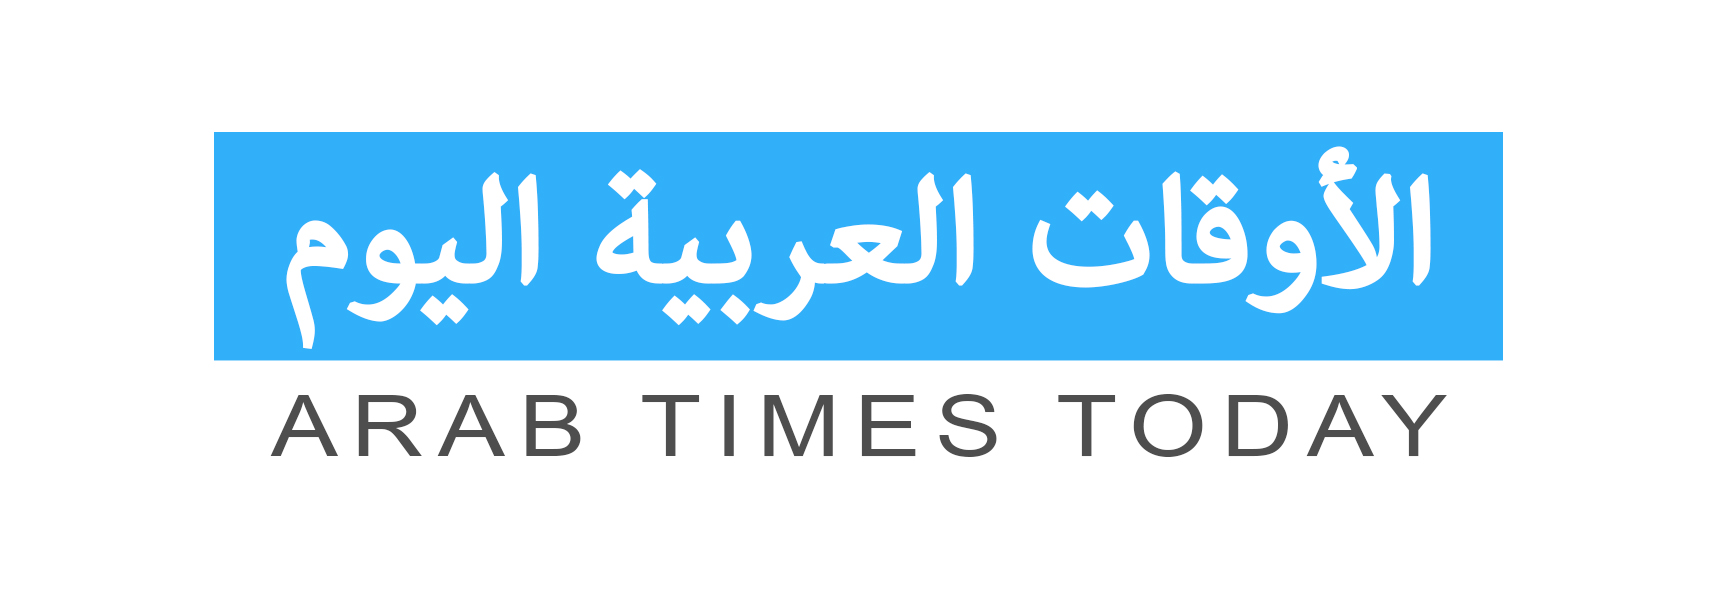 ArabTimesToday